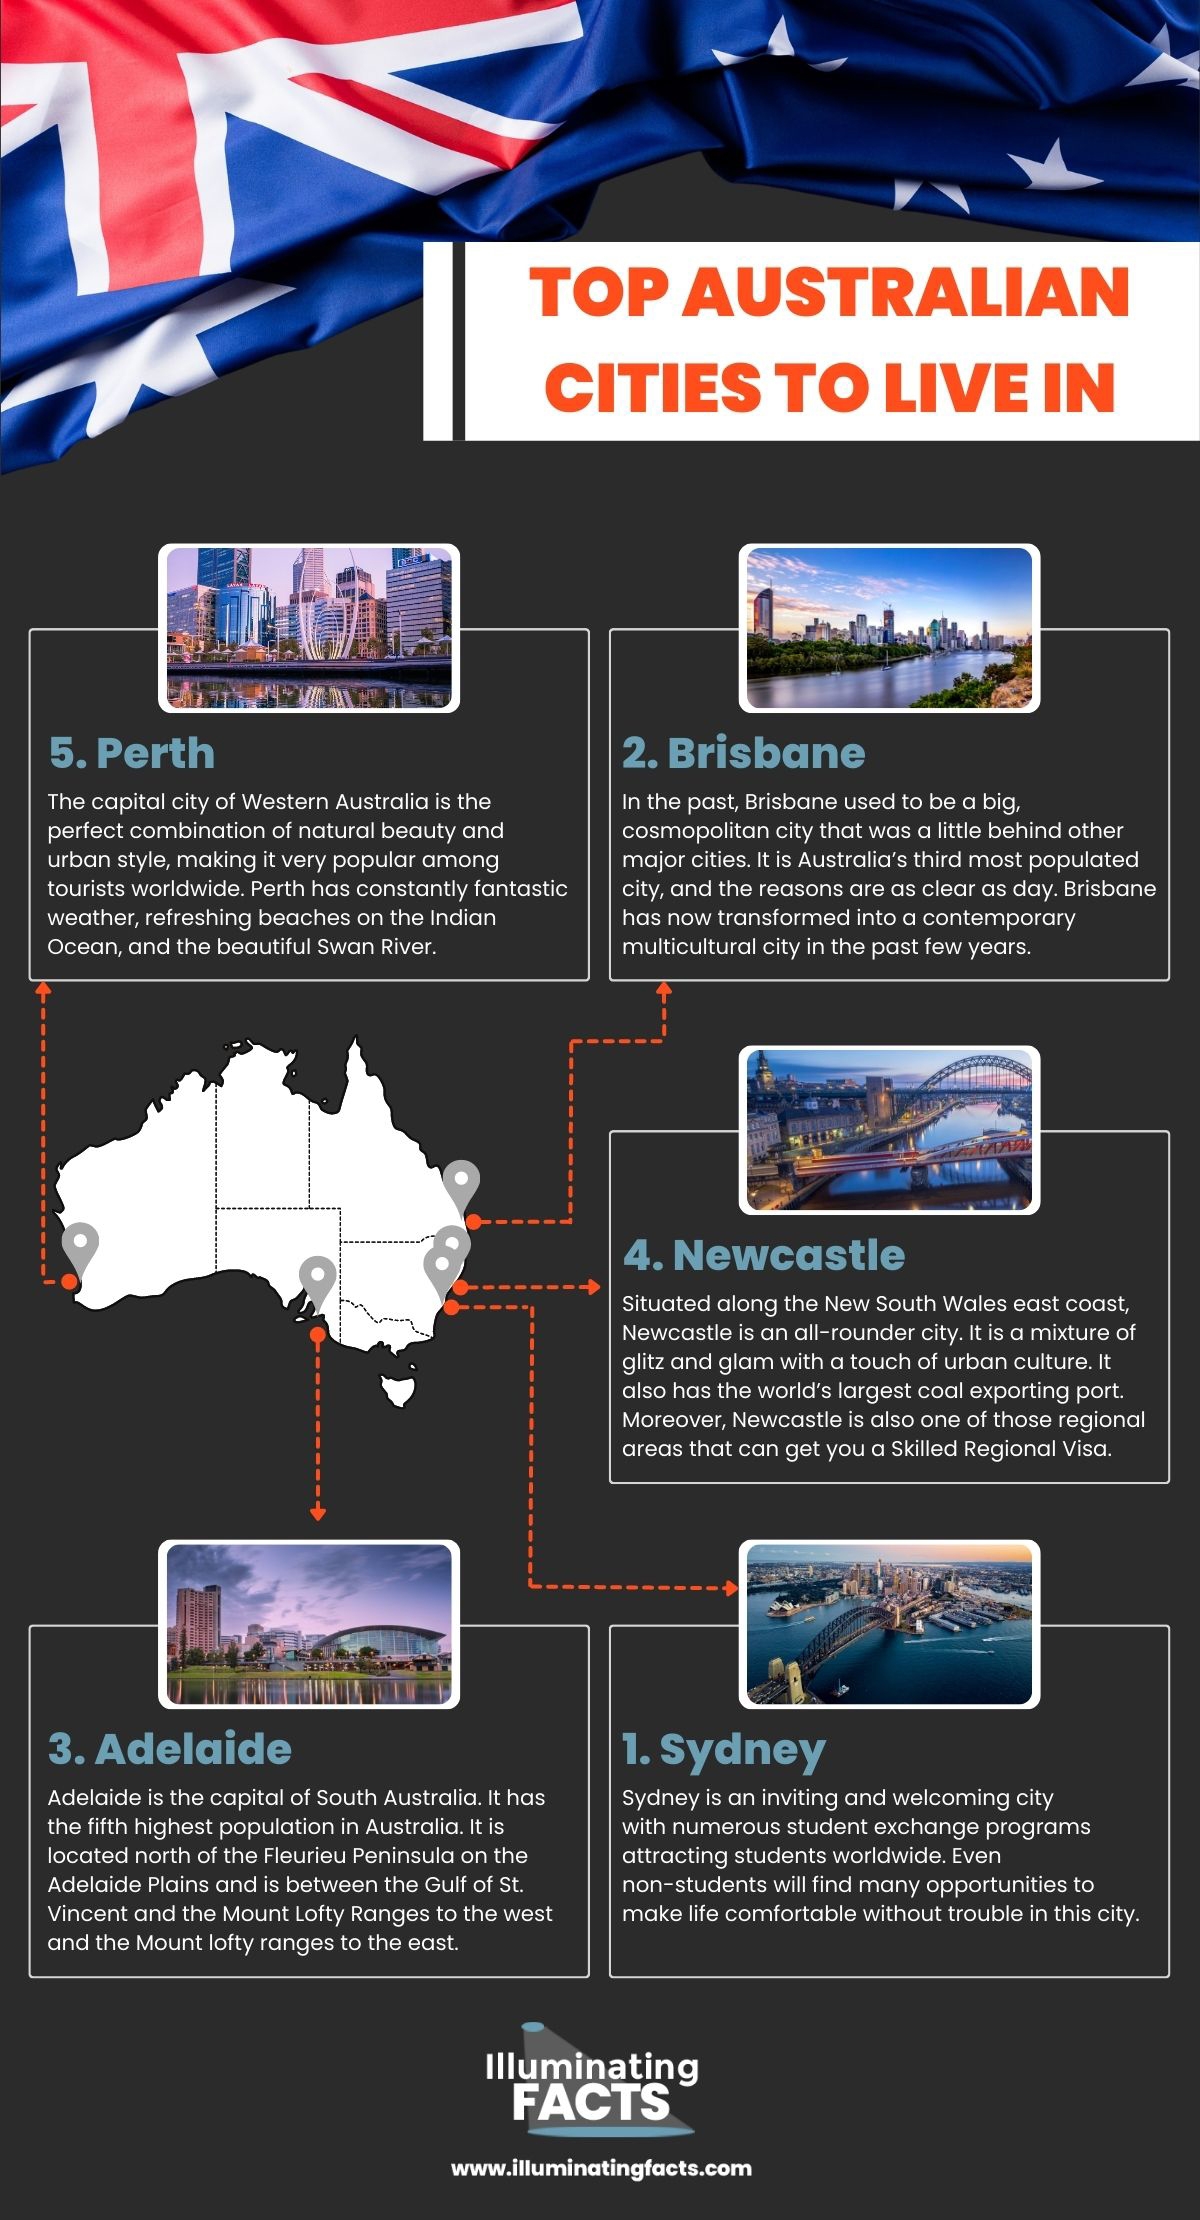 Top Australian cities to live in